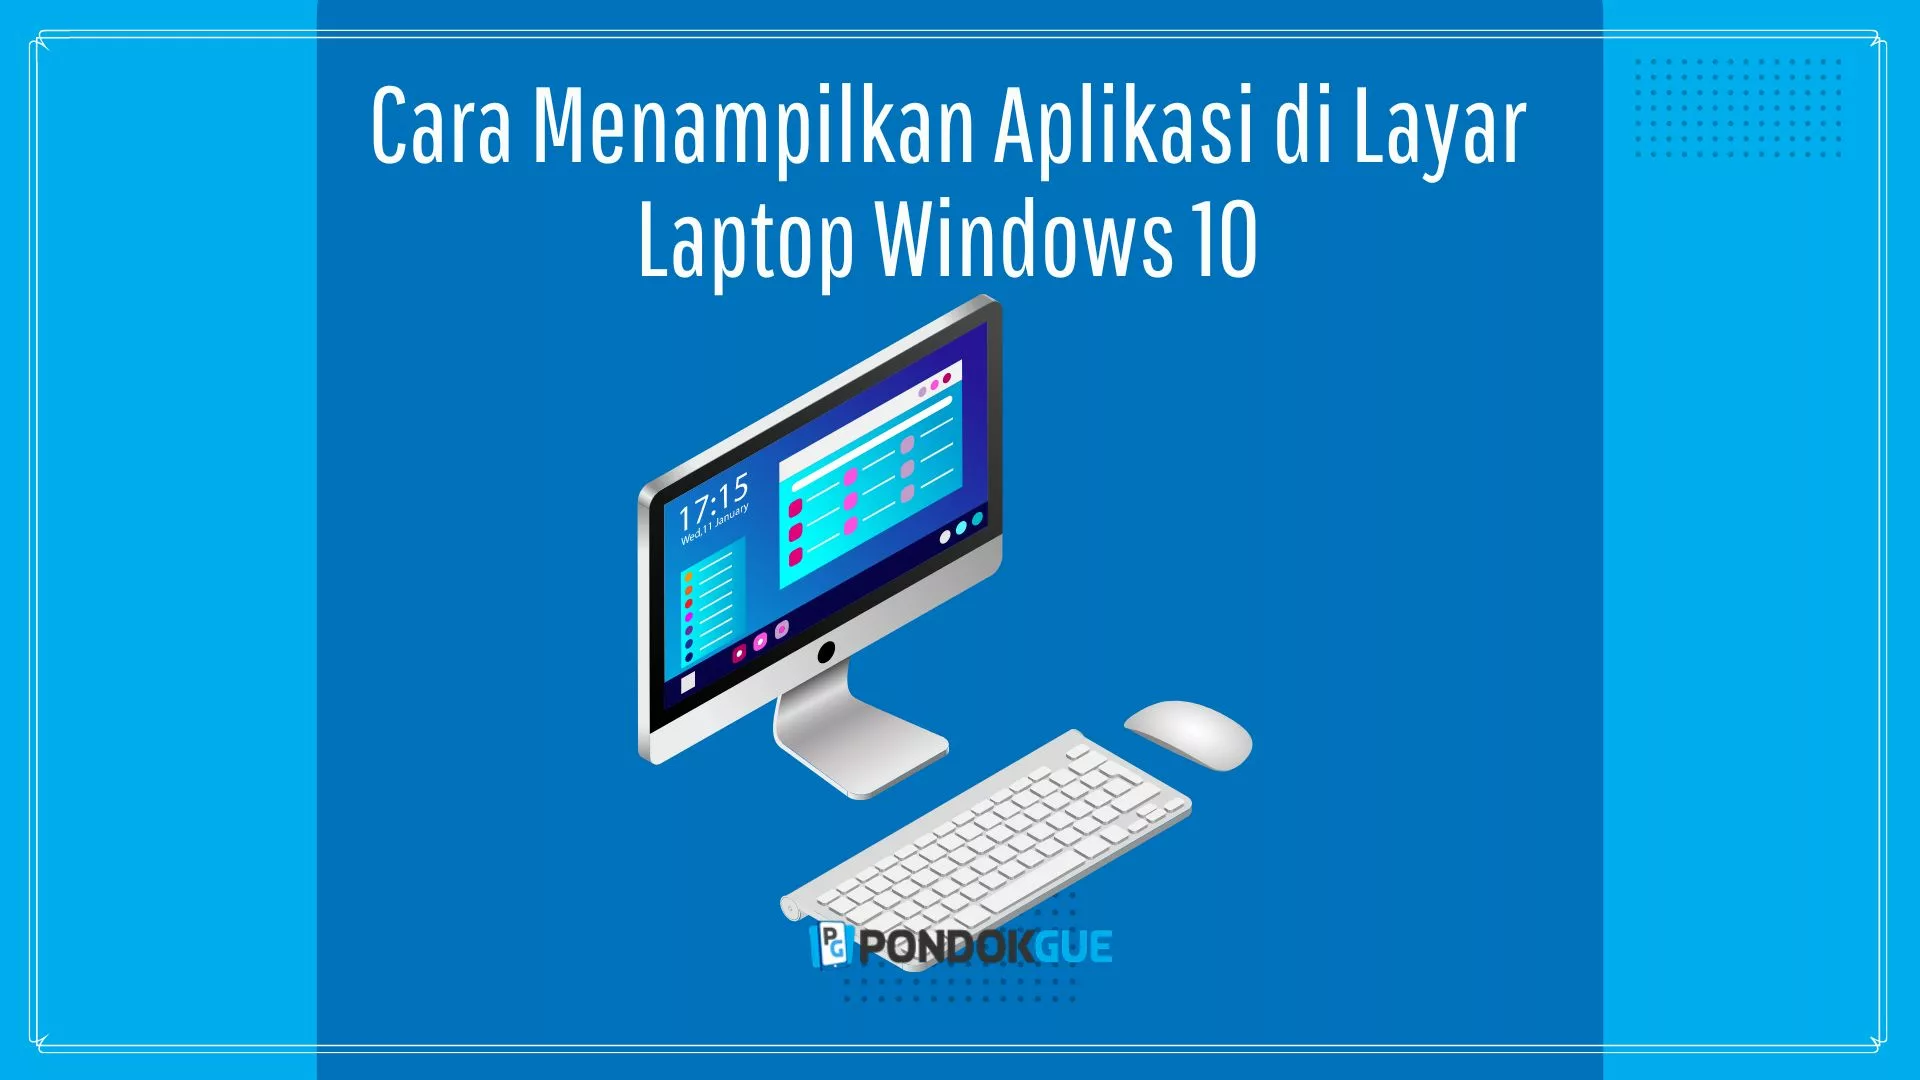 Cara Menampilkan Aplikasi di Layar Laptop Windows 10 - Pondokgue.com